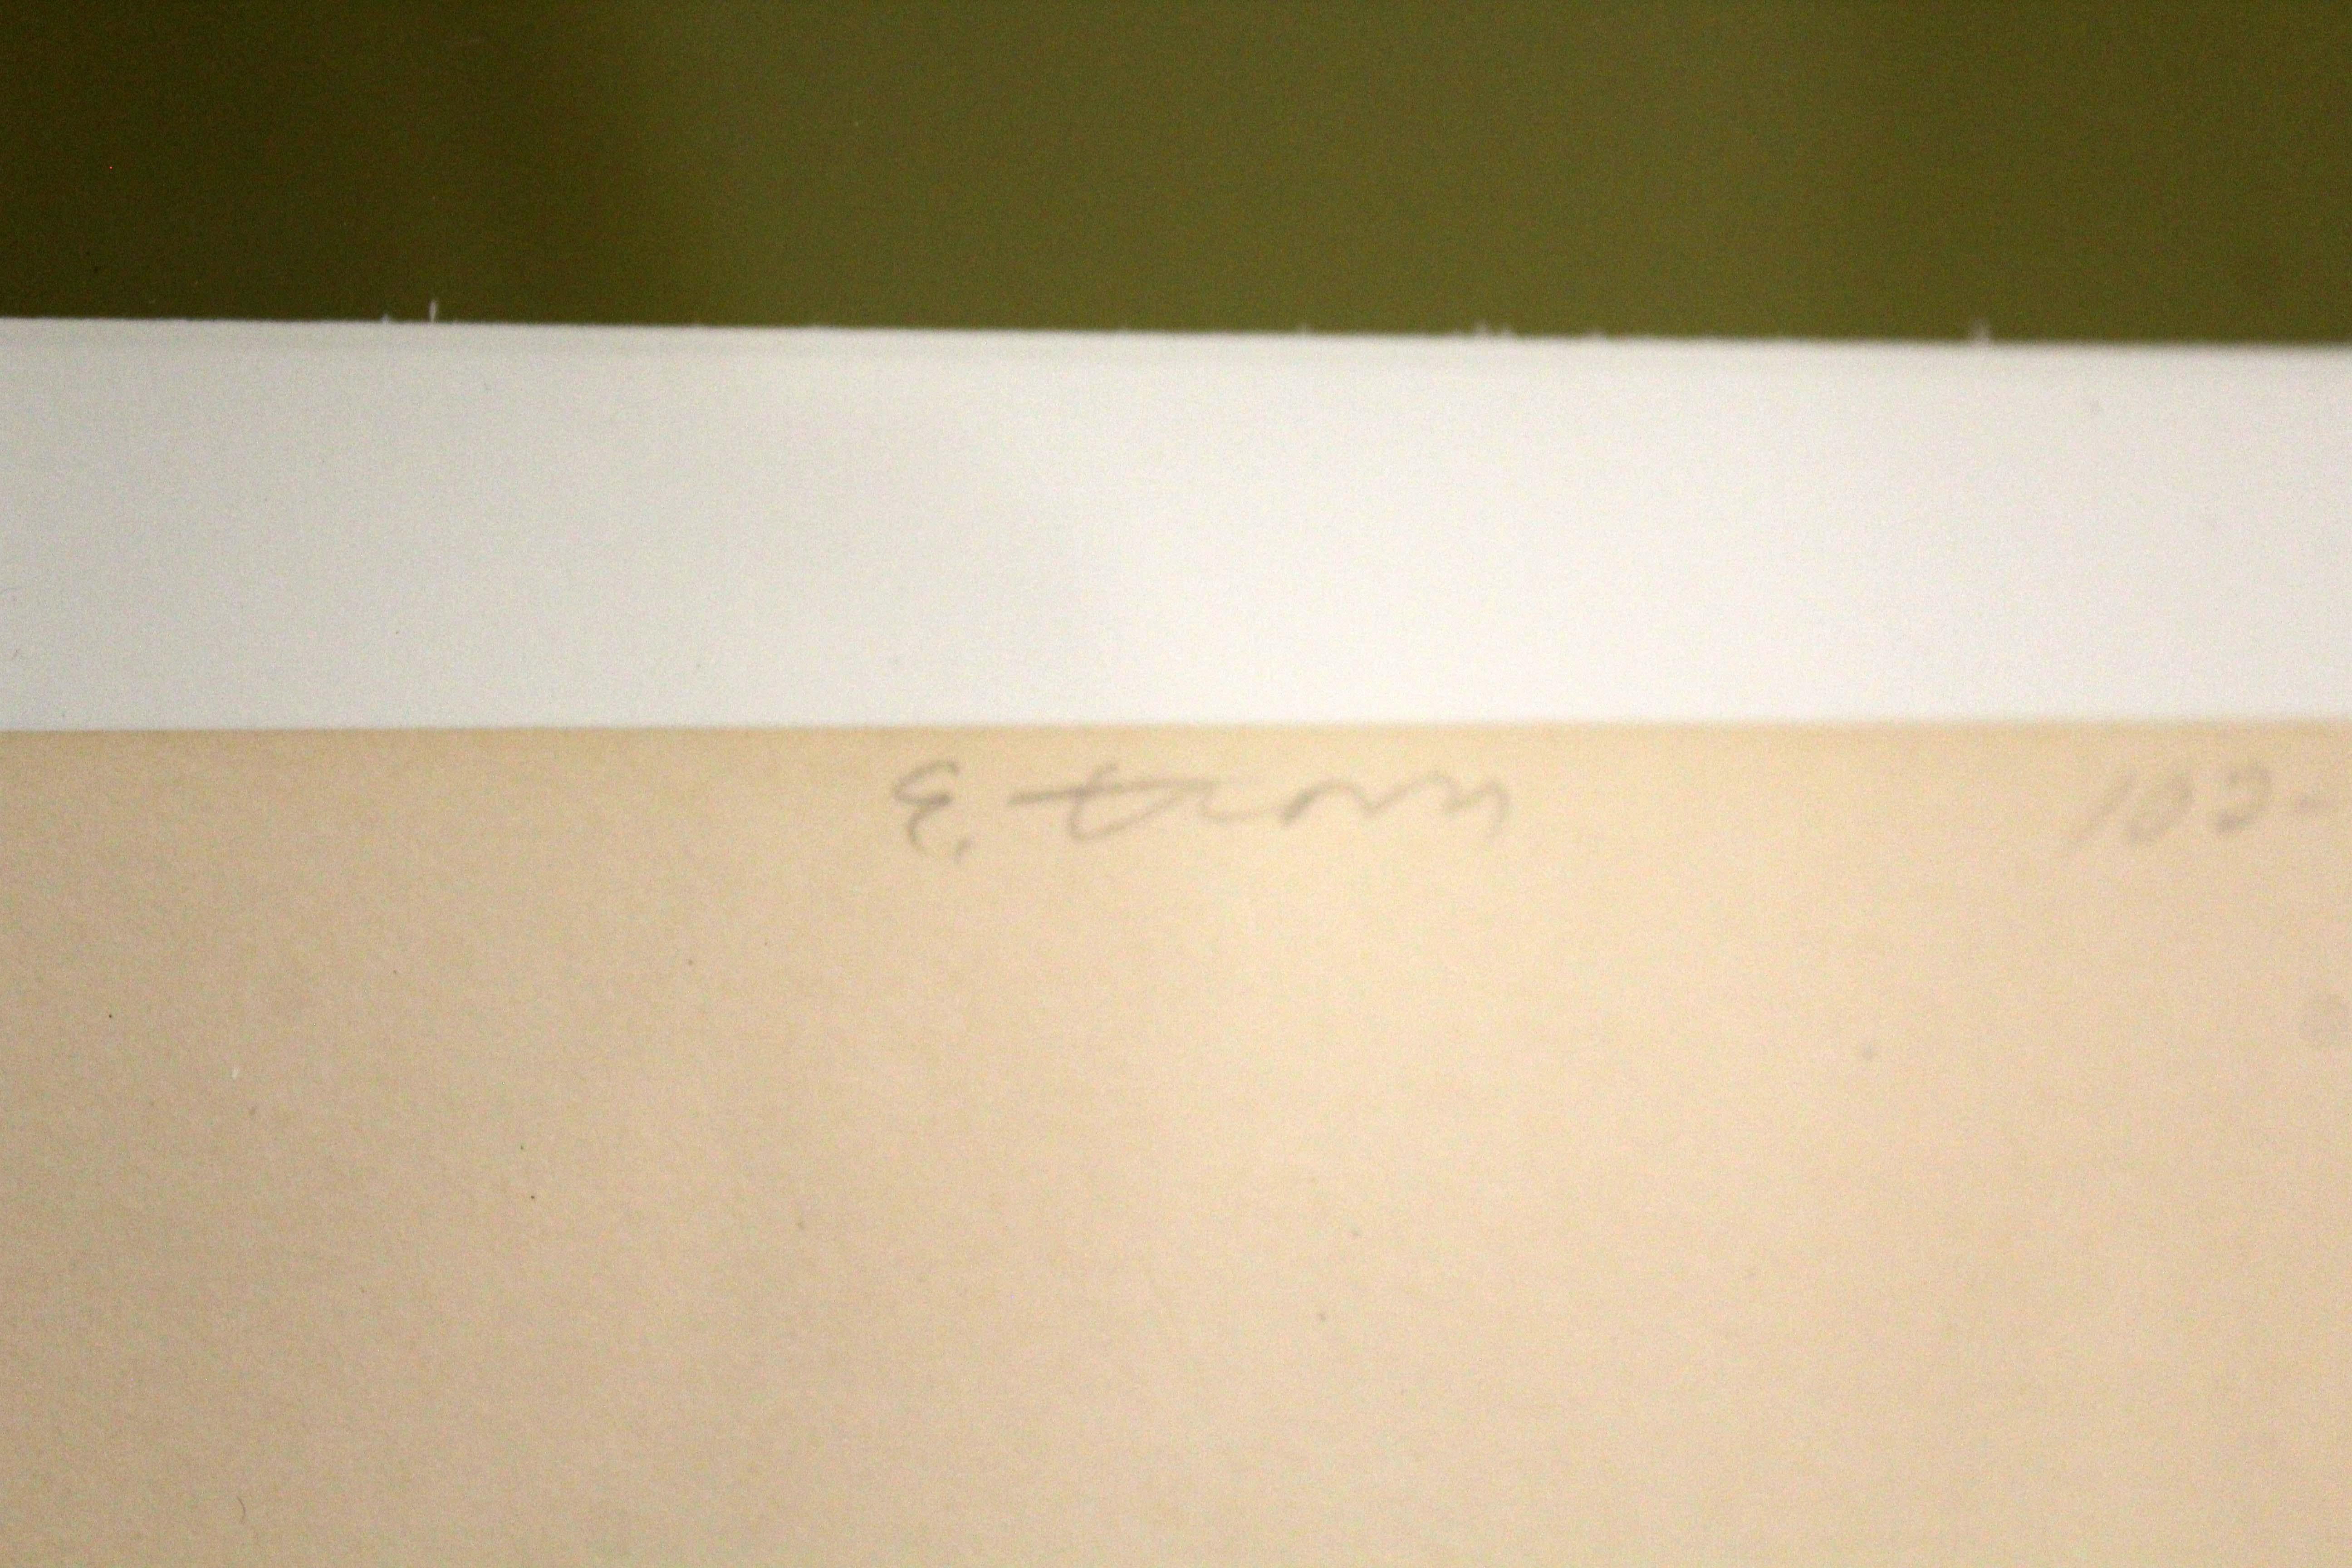 Ernest Trova Falling Man Manscape vi 1969 Limited Edition Serigraph Framed 2